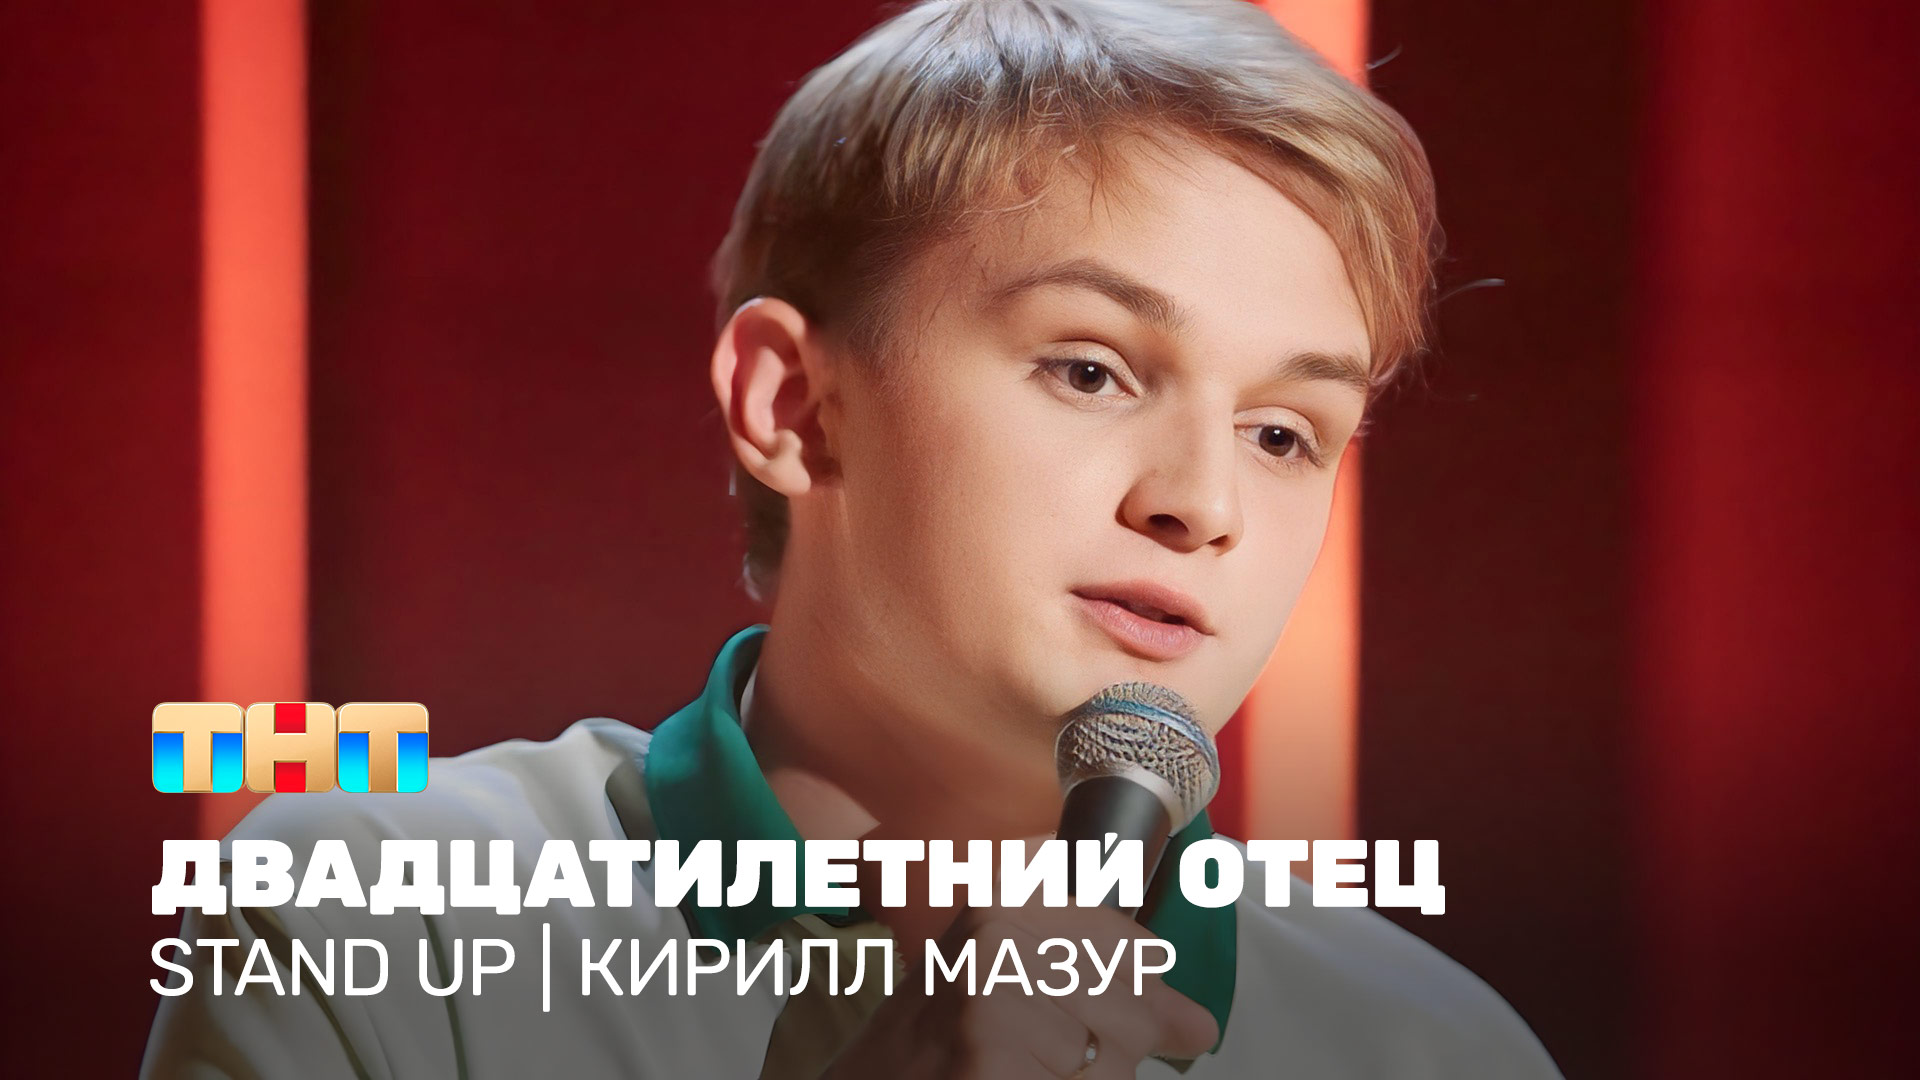 Stand Up: Кирилл Мазур - двадцатилетний отец